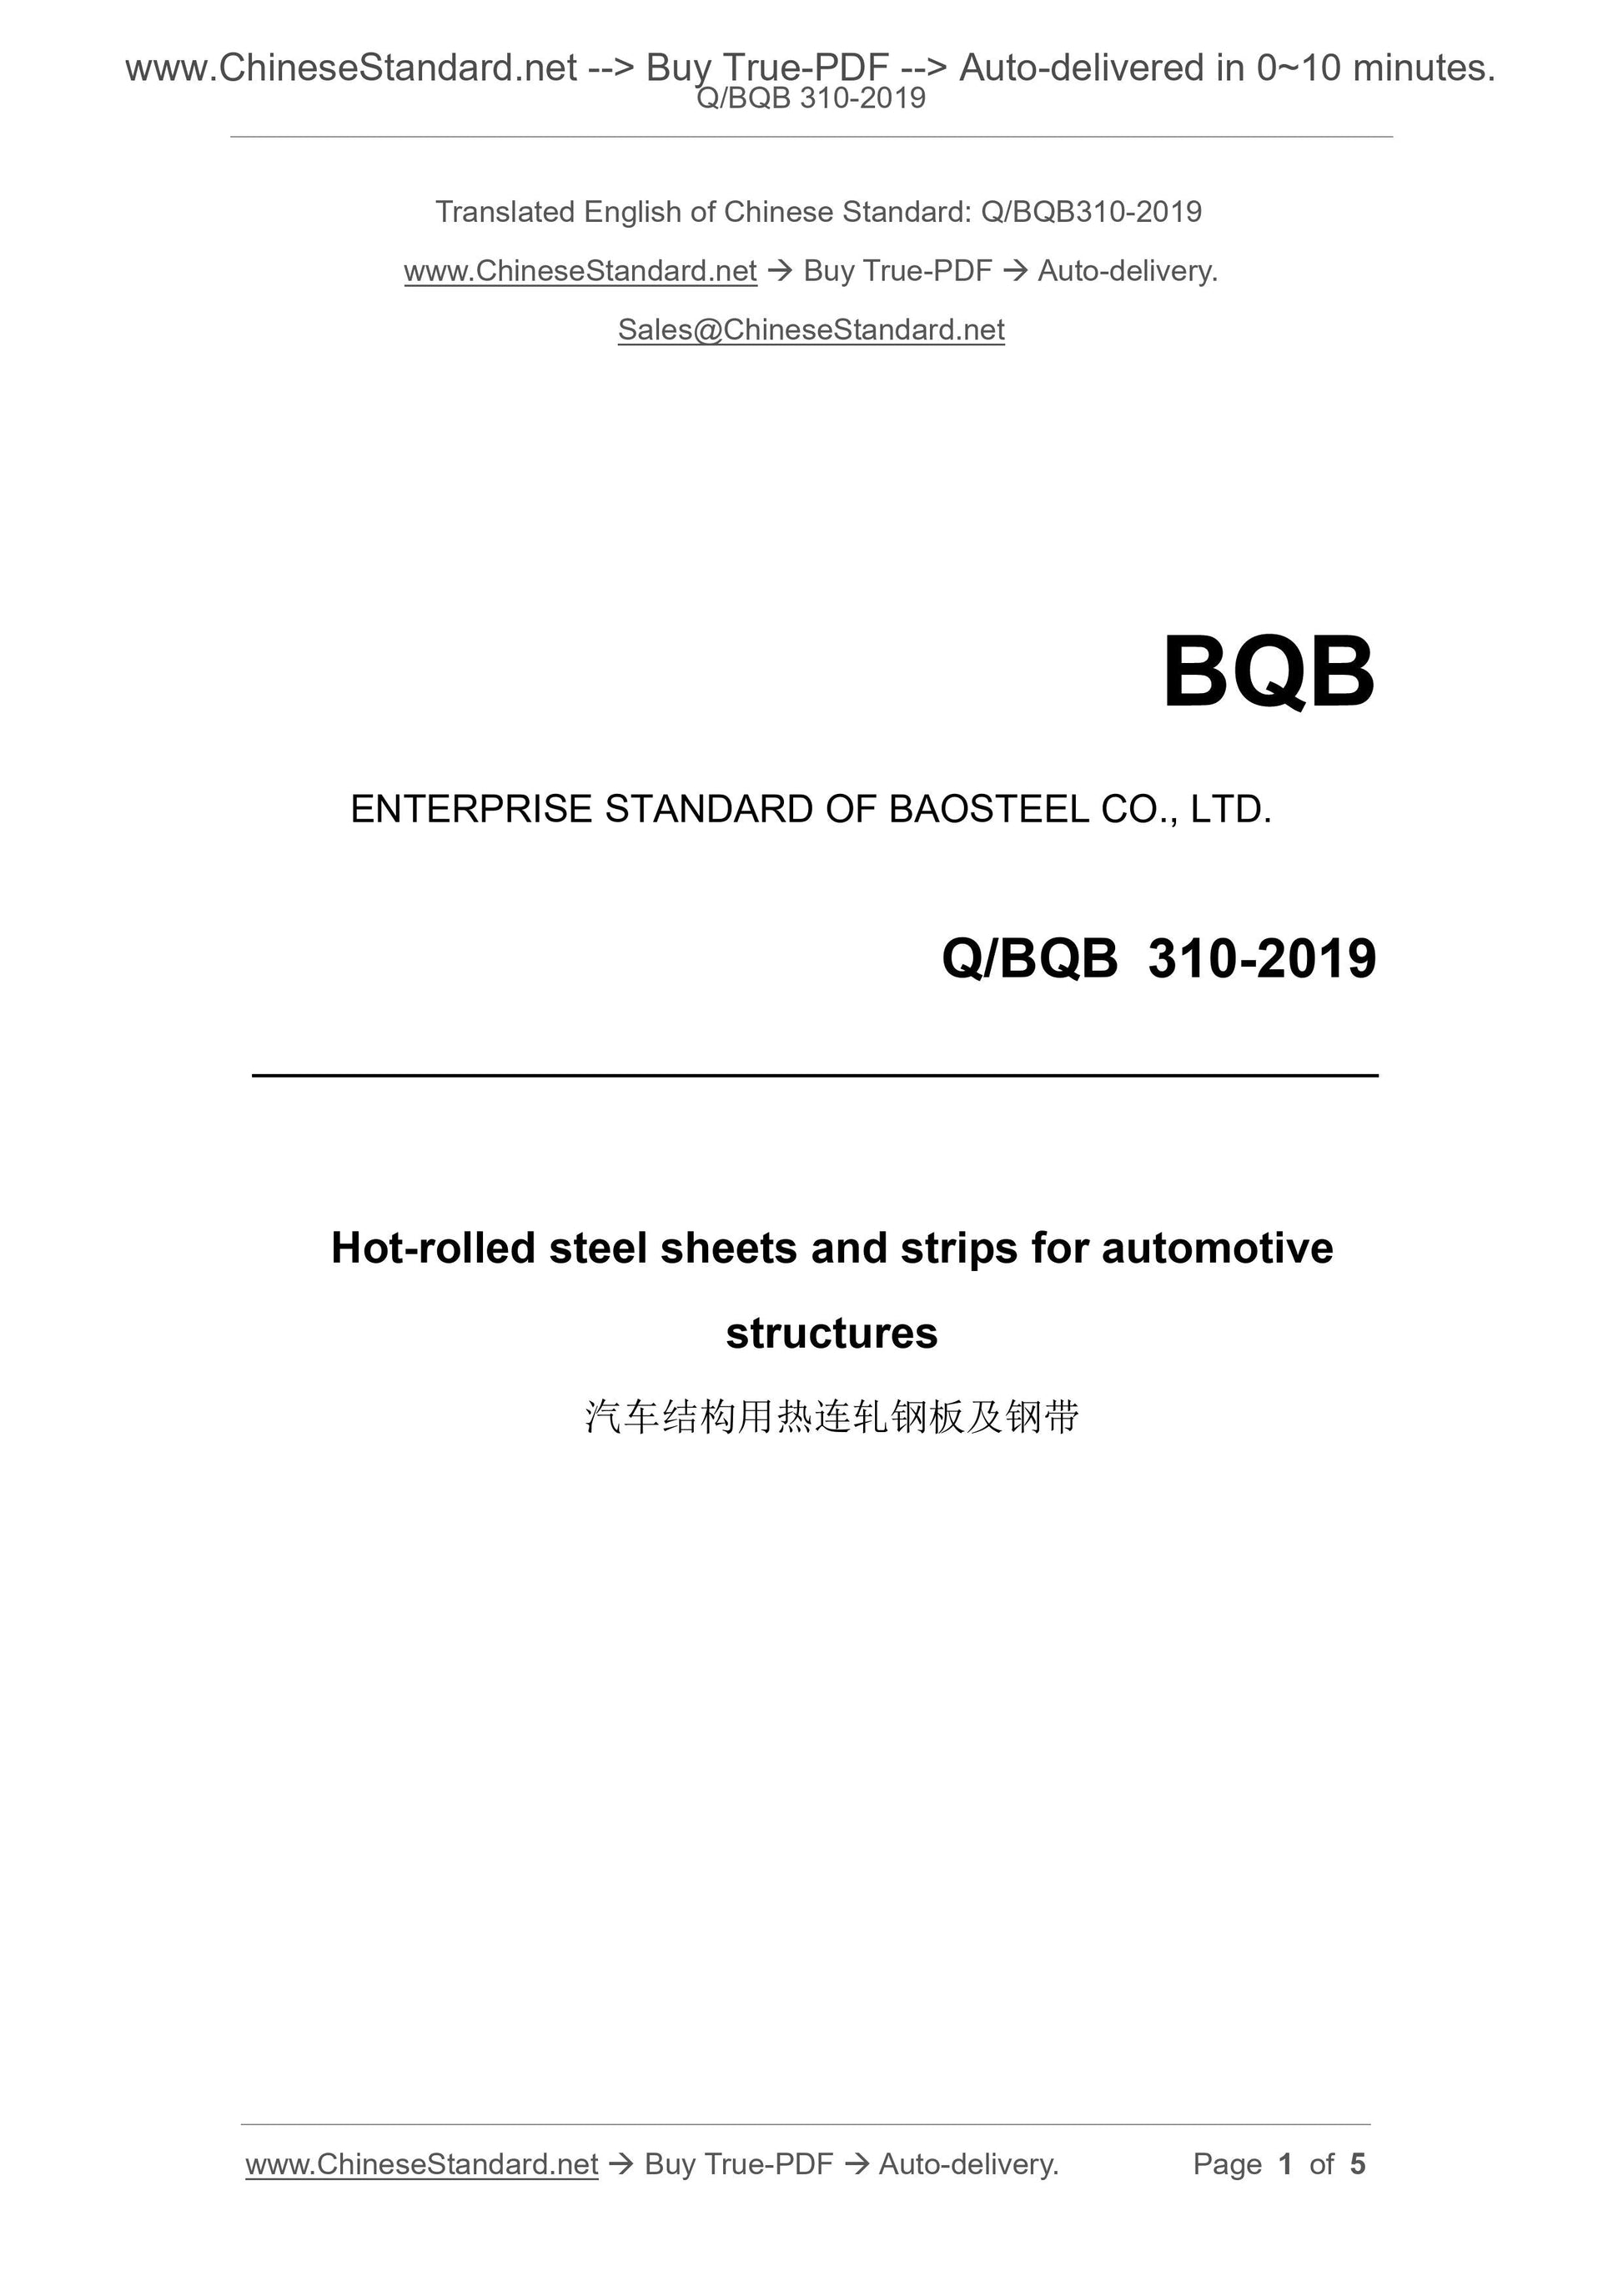 Q/BQB 310-2019 Page 1